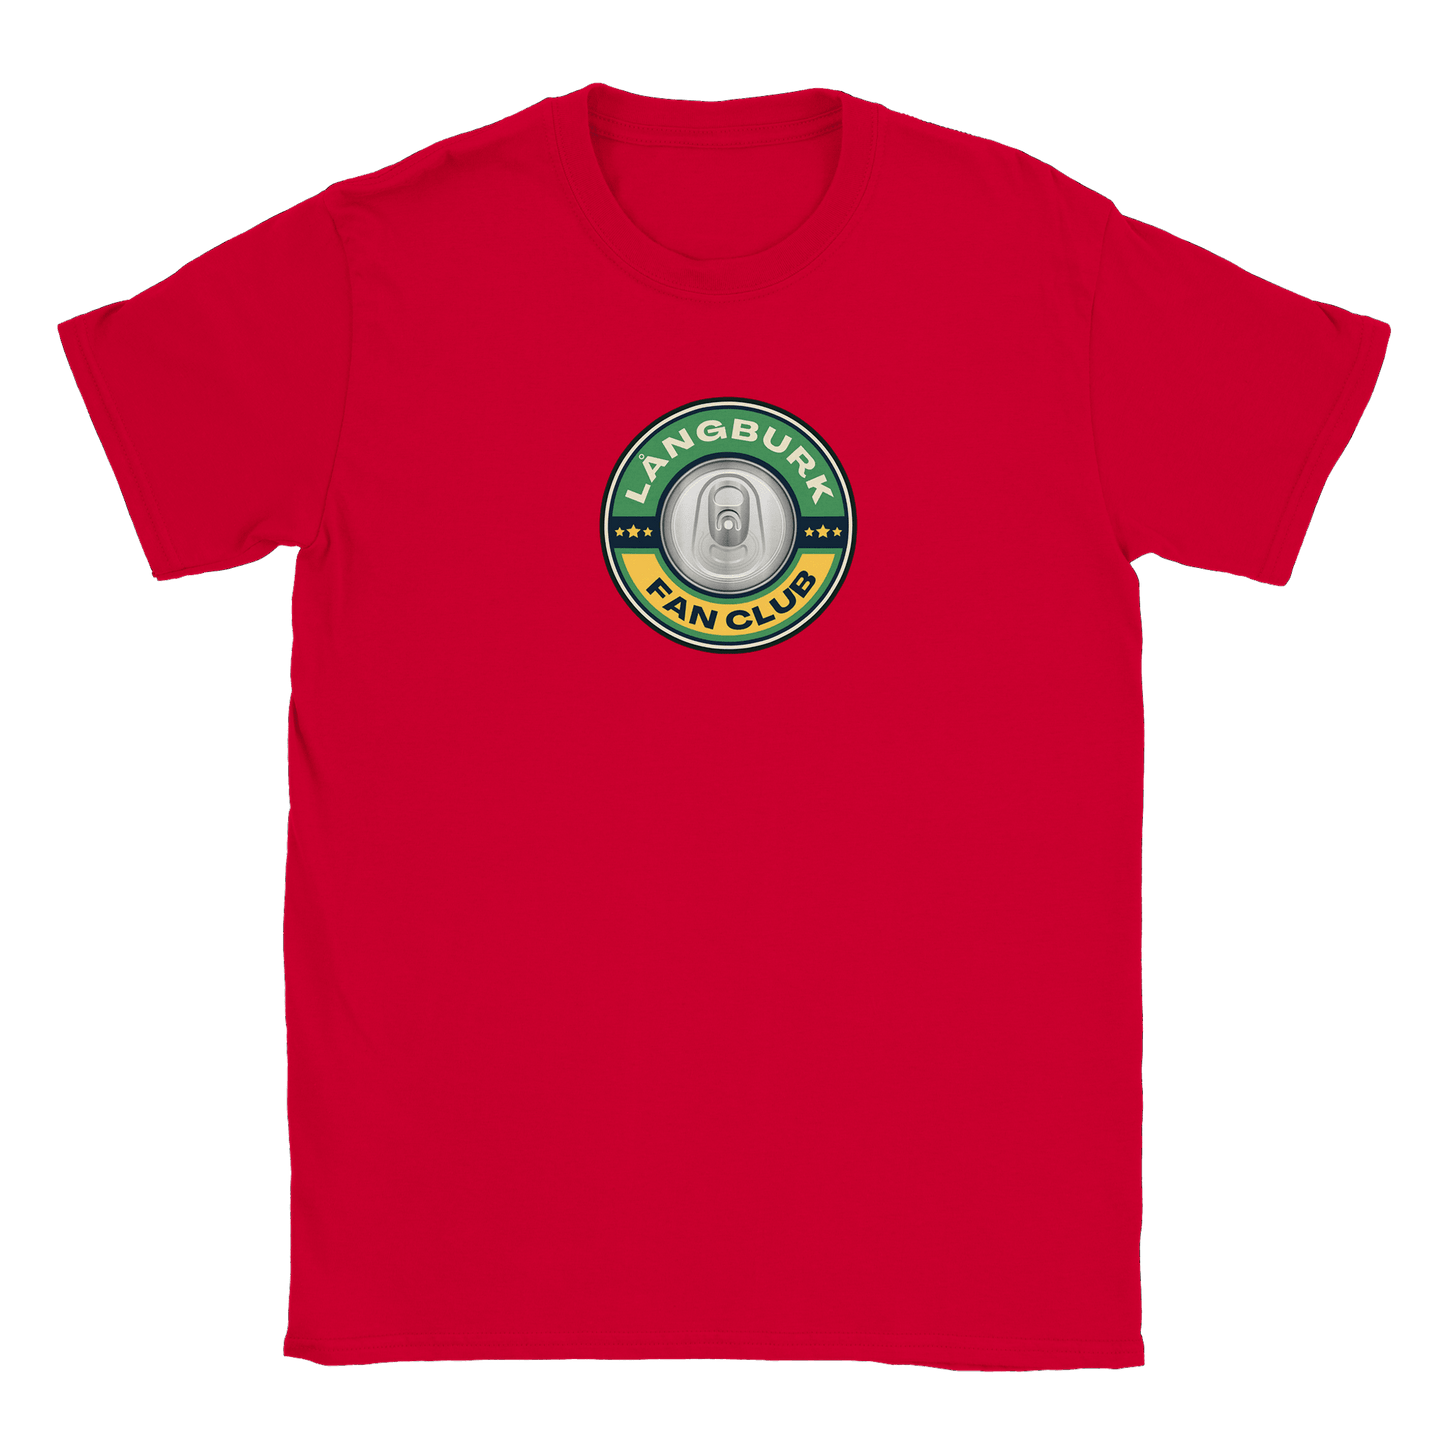 Långburk Fan Club - T-shirt Röd